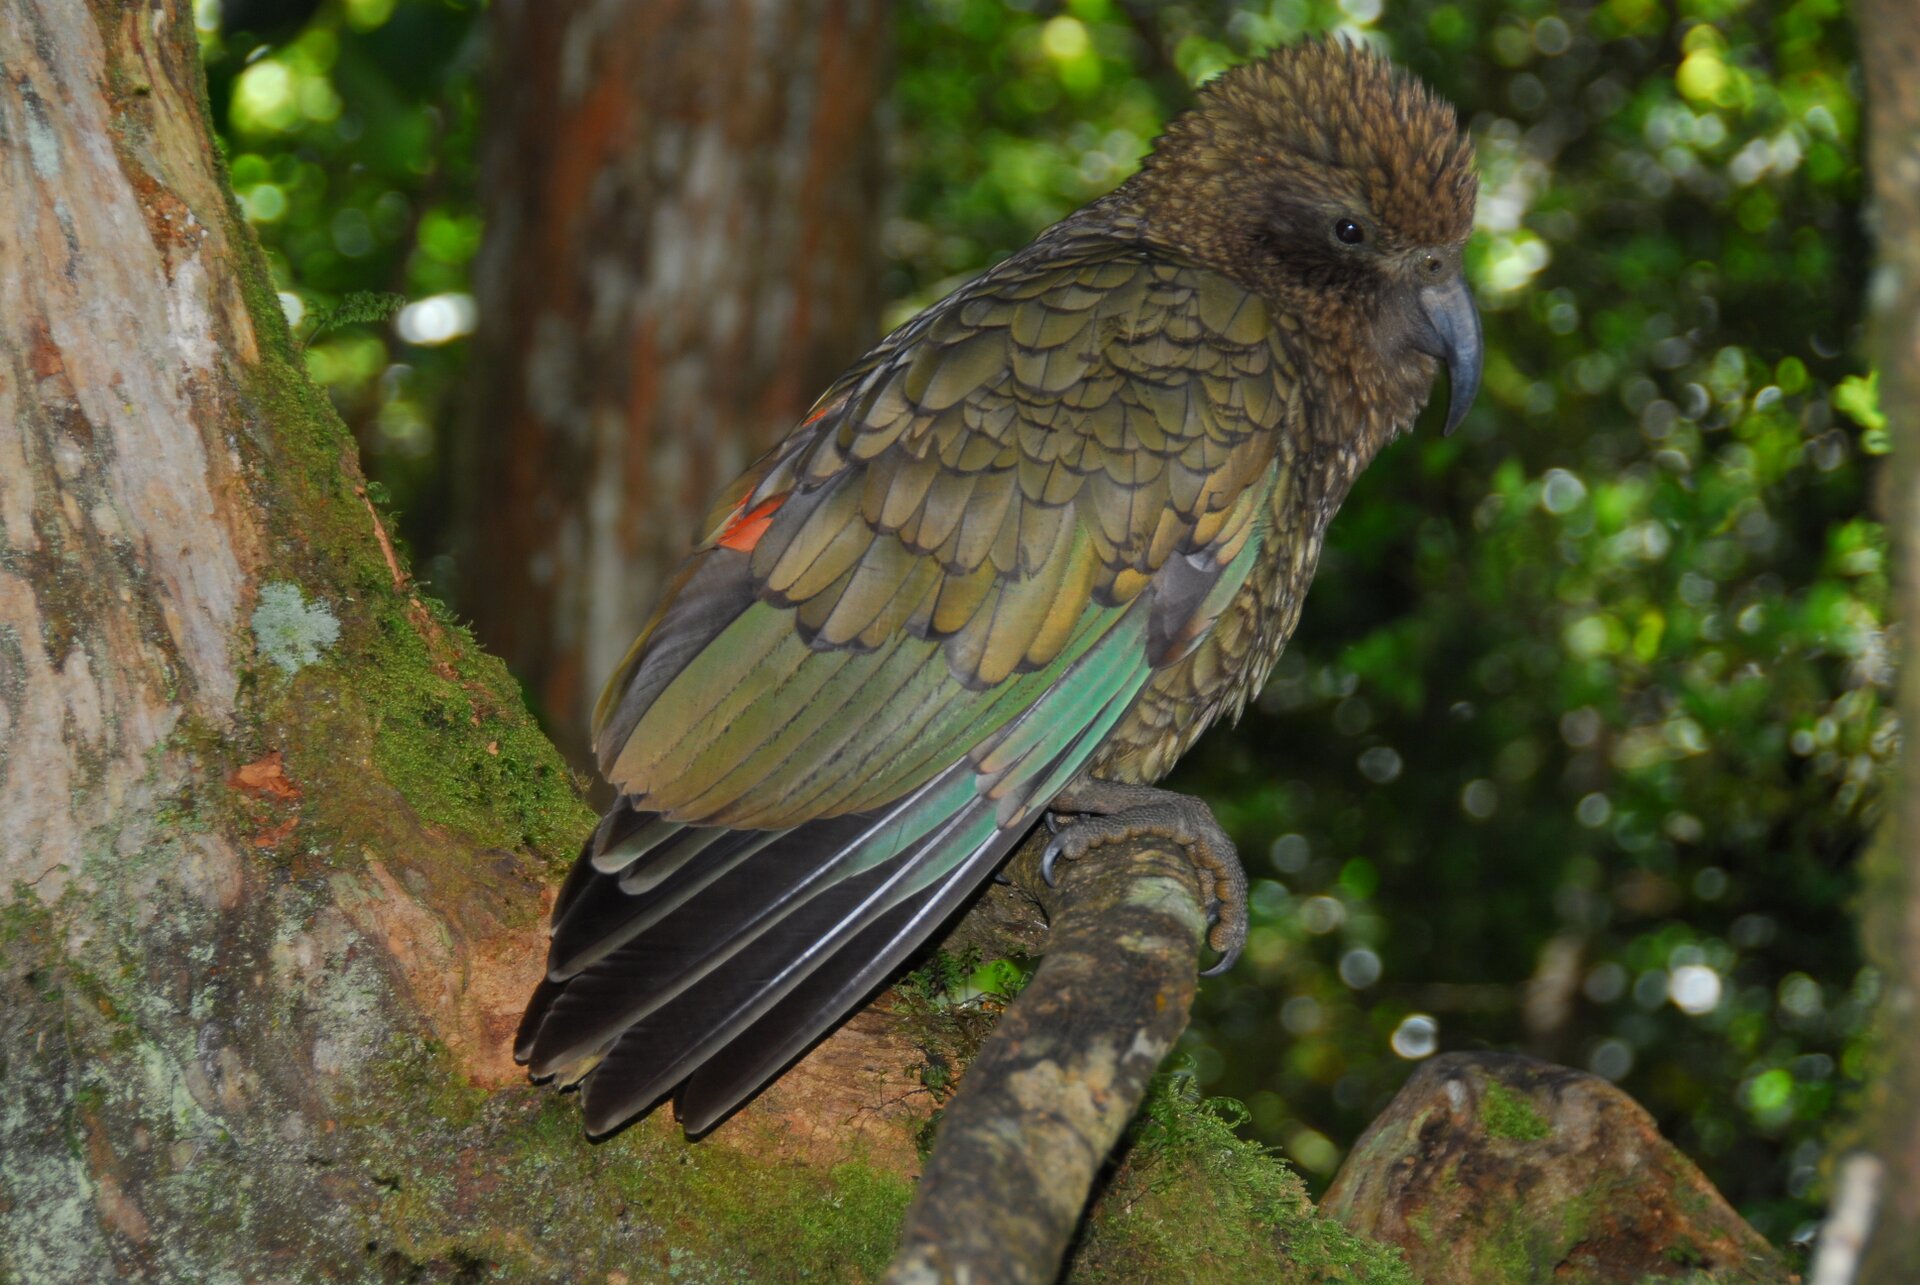 Fotografia przedstawia oliwkowoczarną papugę w tropikalnym lesie. Nestor kea siedzi na lianie skierowany w prawo. Na głowie ma nastroszone krótkie pióra i zakrzywiony, grafitowy dziób.